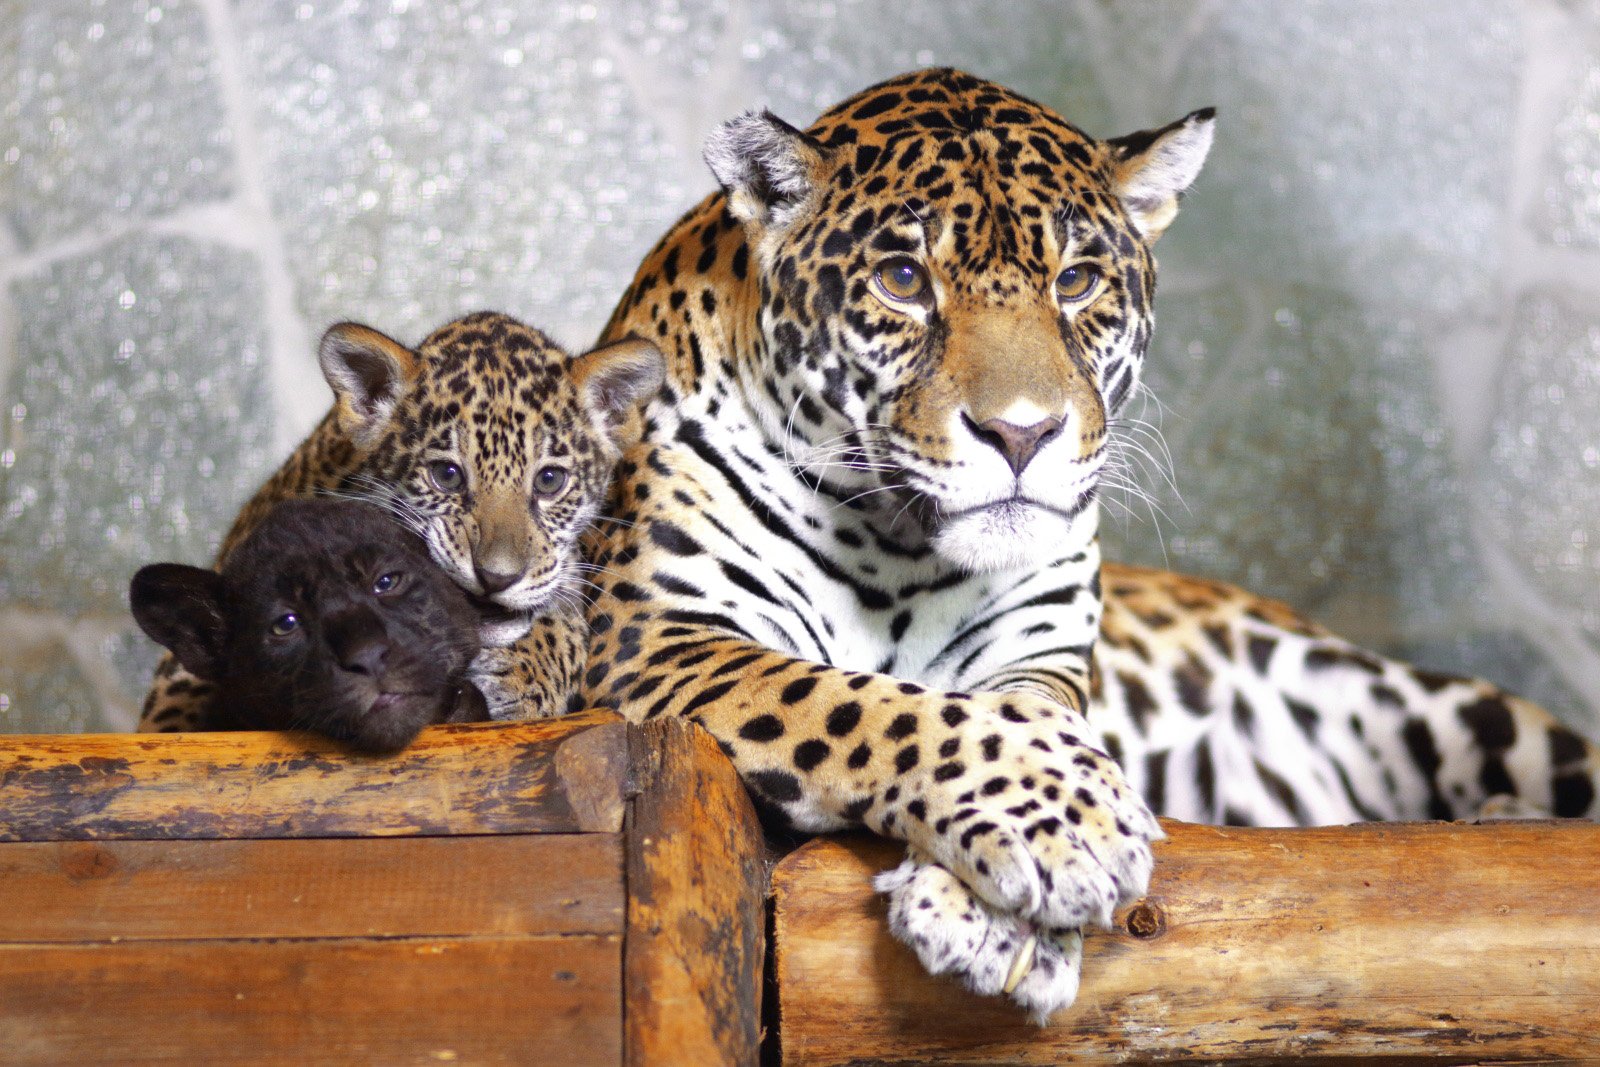 ленинградский зоопарк в санкт петербурге официальный сайт